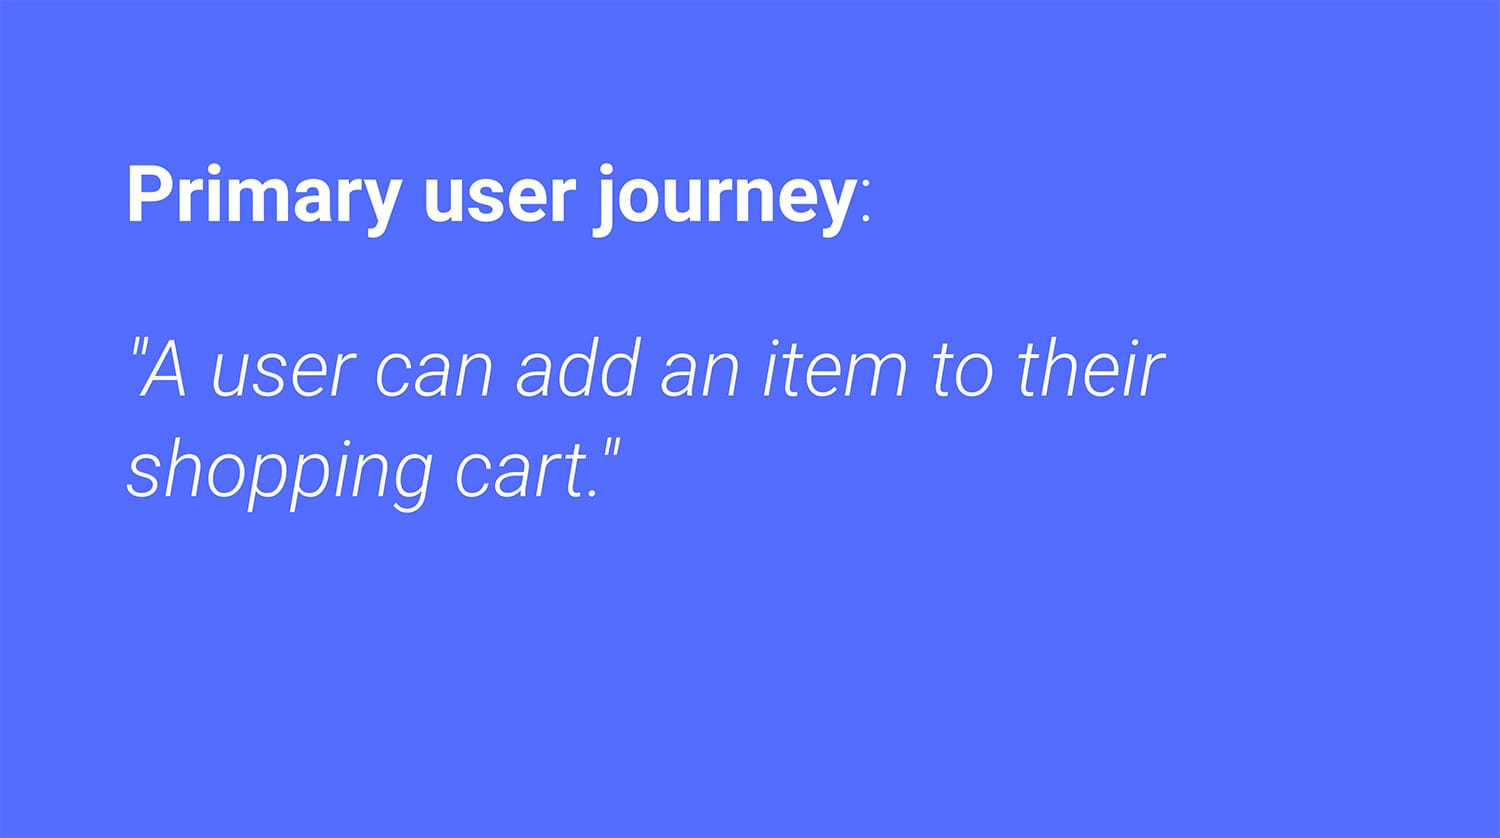 Principal recorrido del usuario: Un usuario puede agregar un artículo a su carrito de compras.